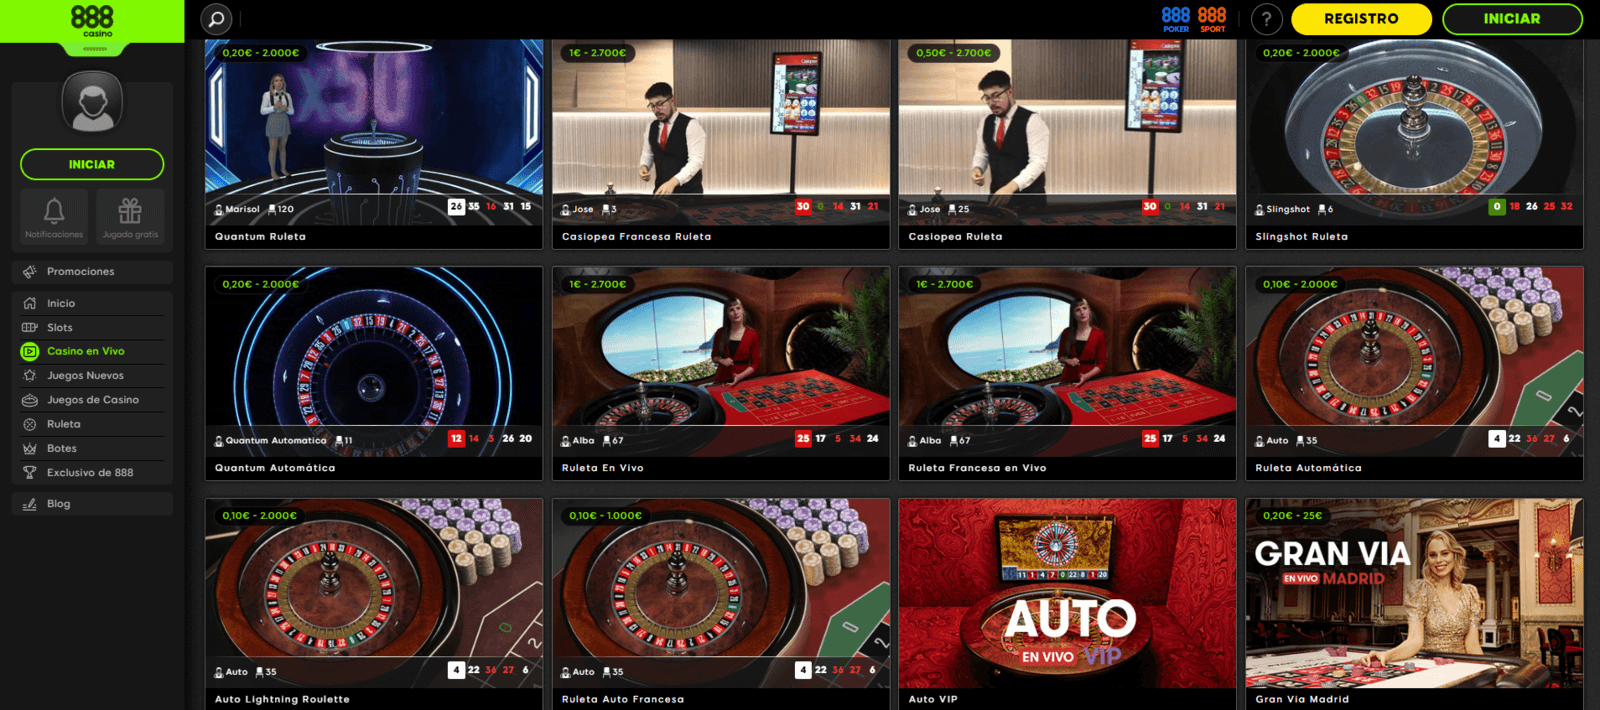 Jugar en vivo en 888 Casino online por dinero real de España en 888.es